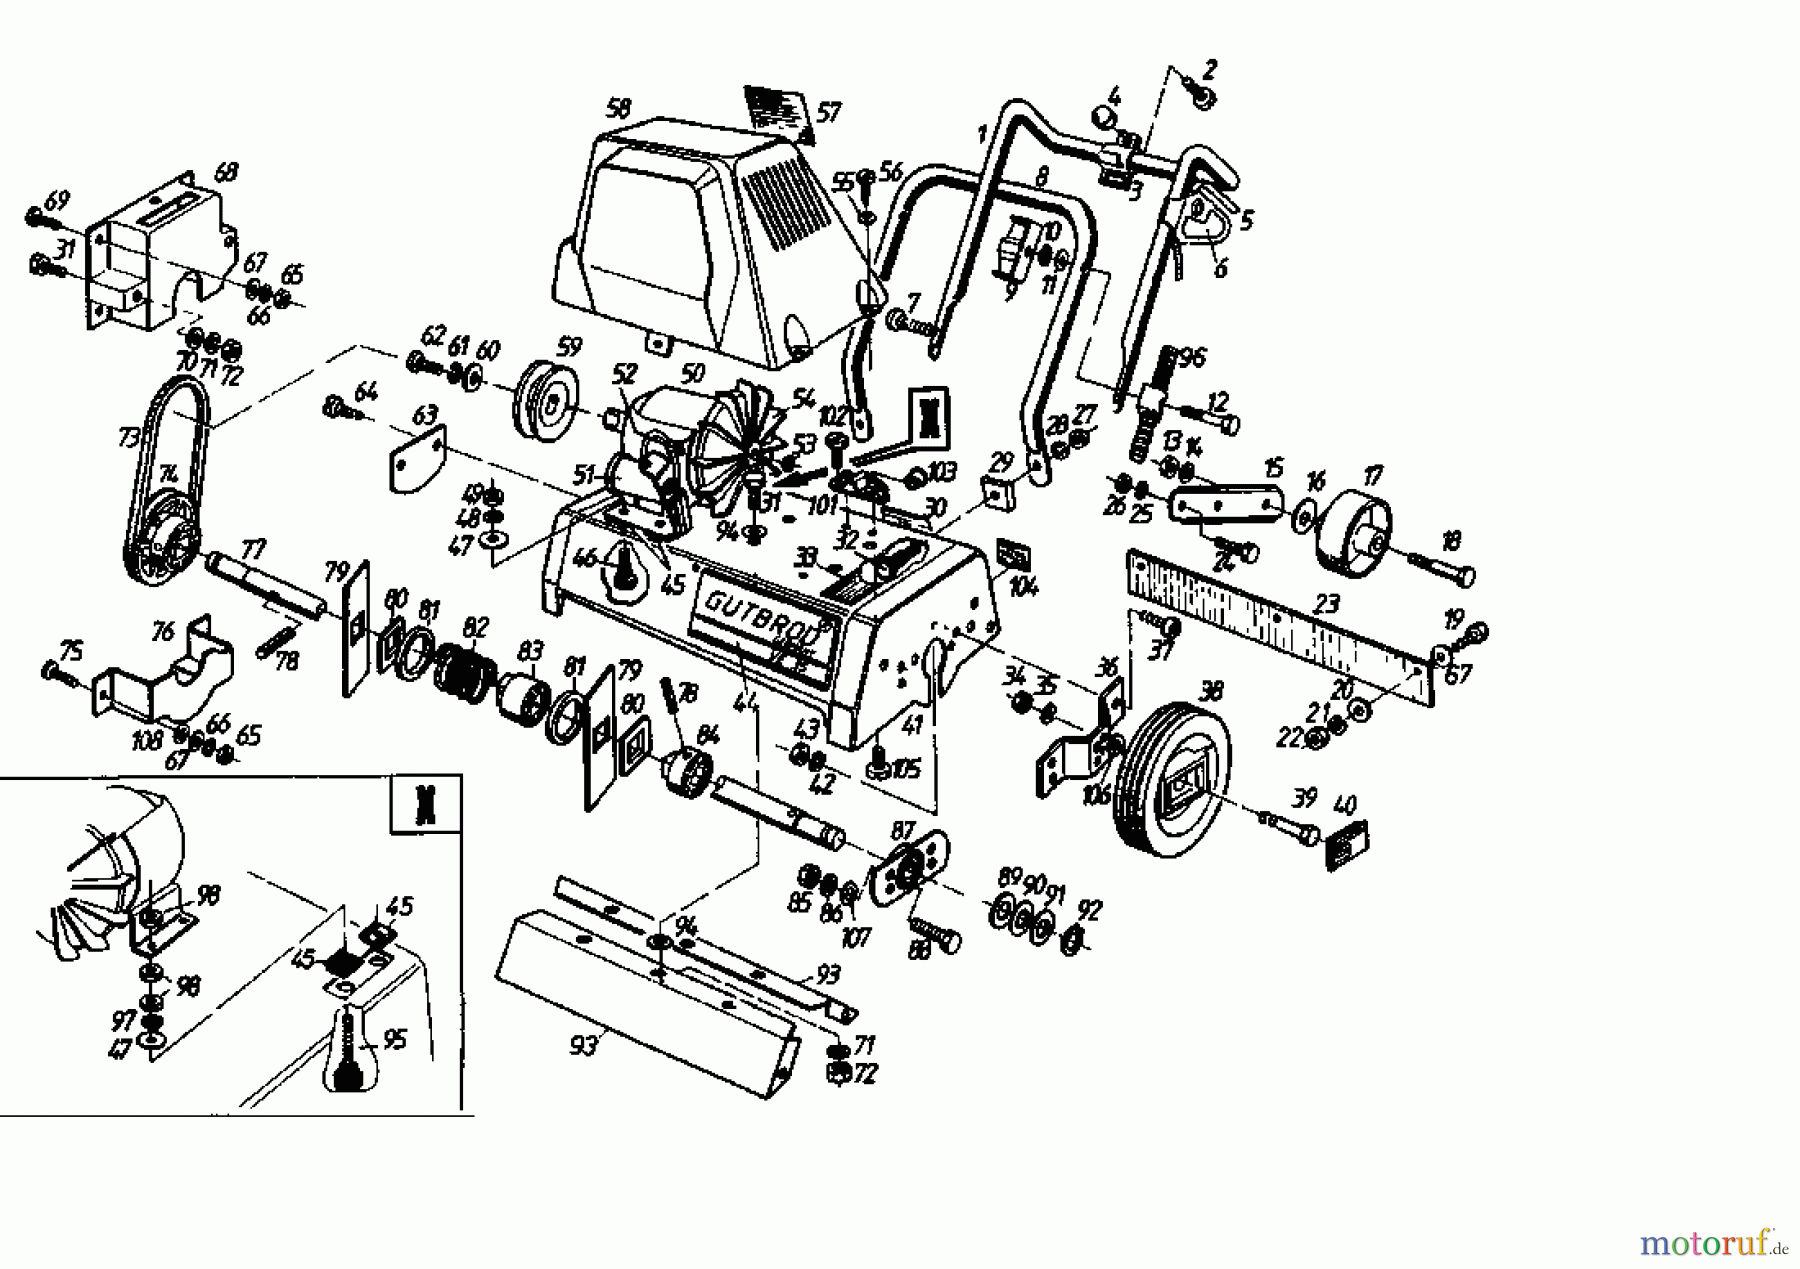  Gutbrod Scarificateur électrique VE 35 02645.09  (1993) Machine de base